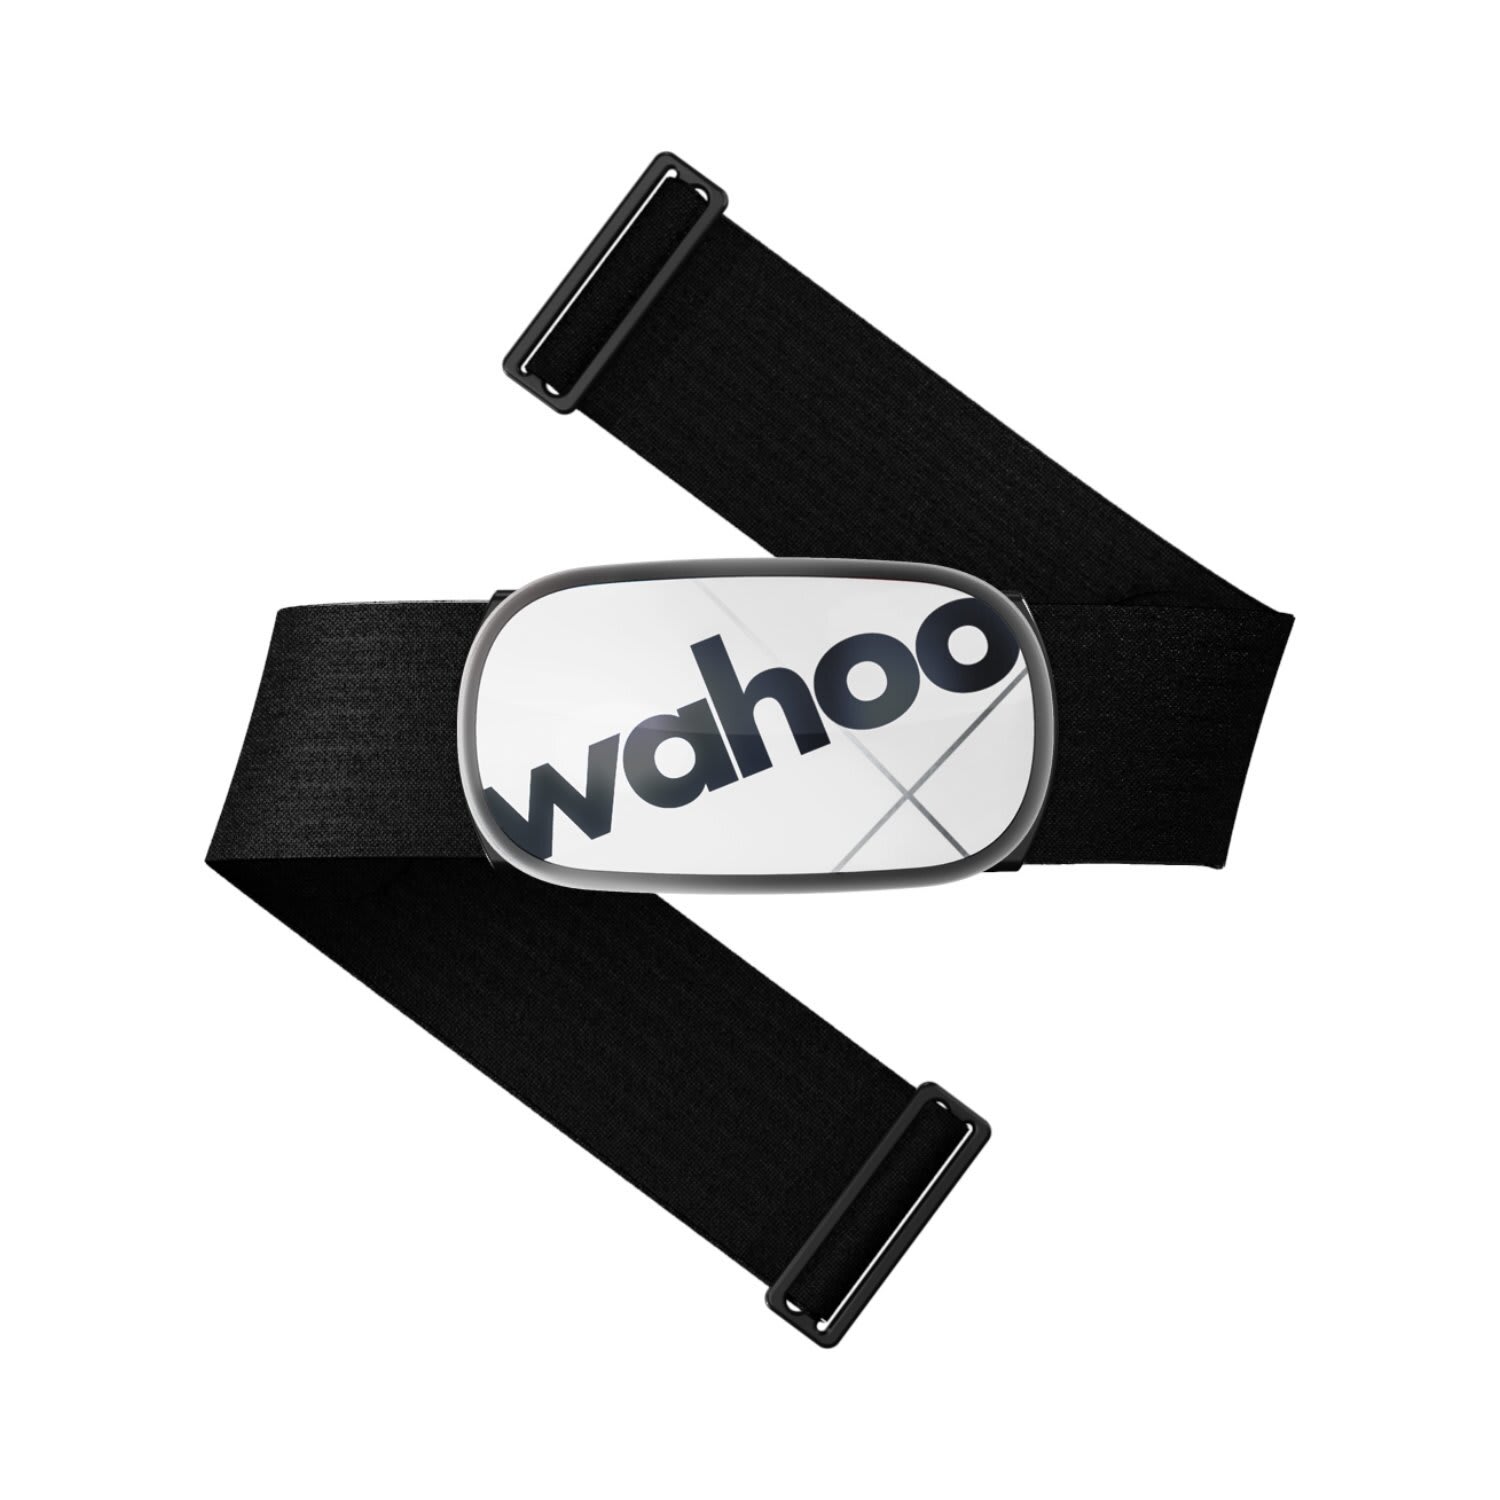 wahoo fitness app data backup